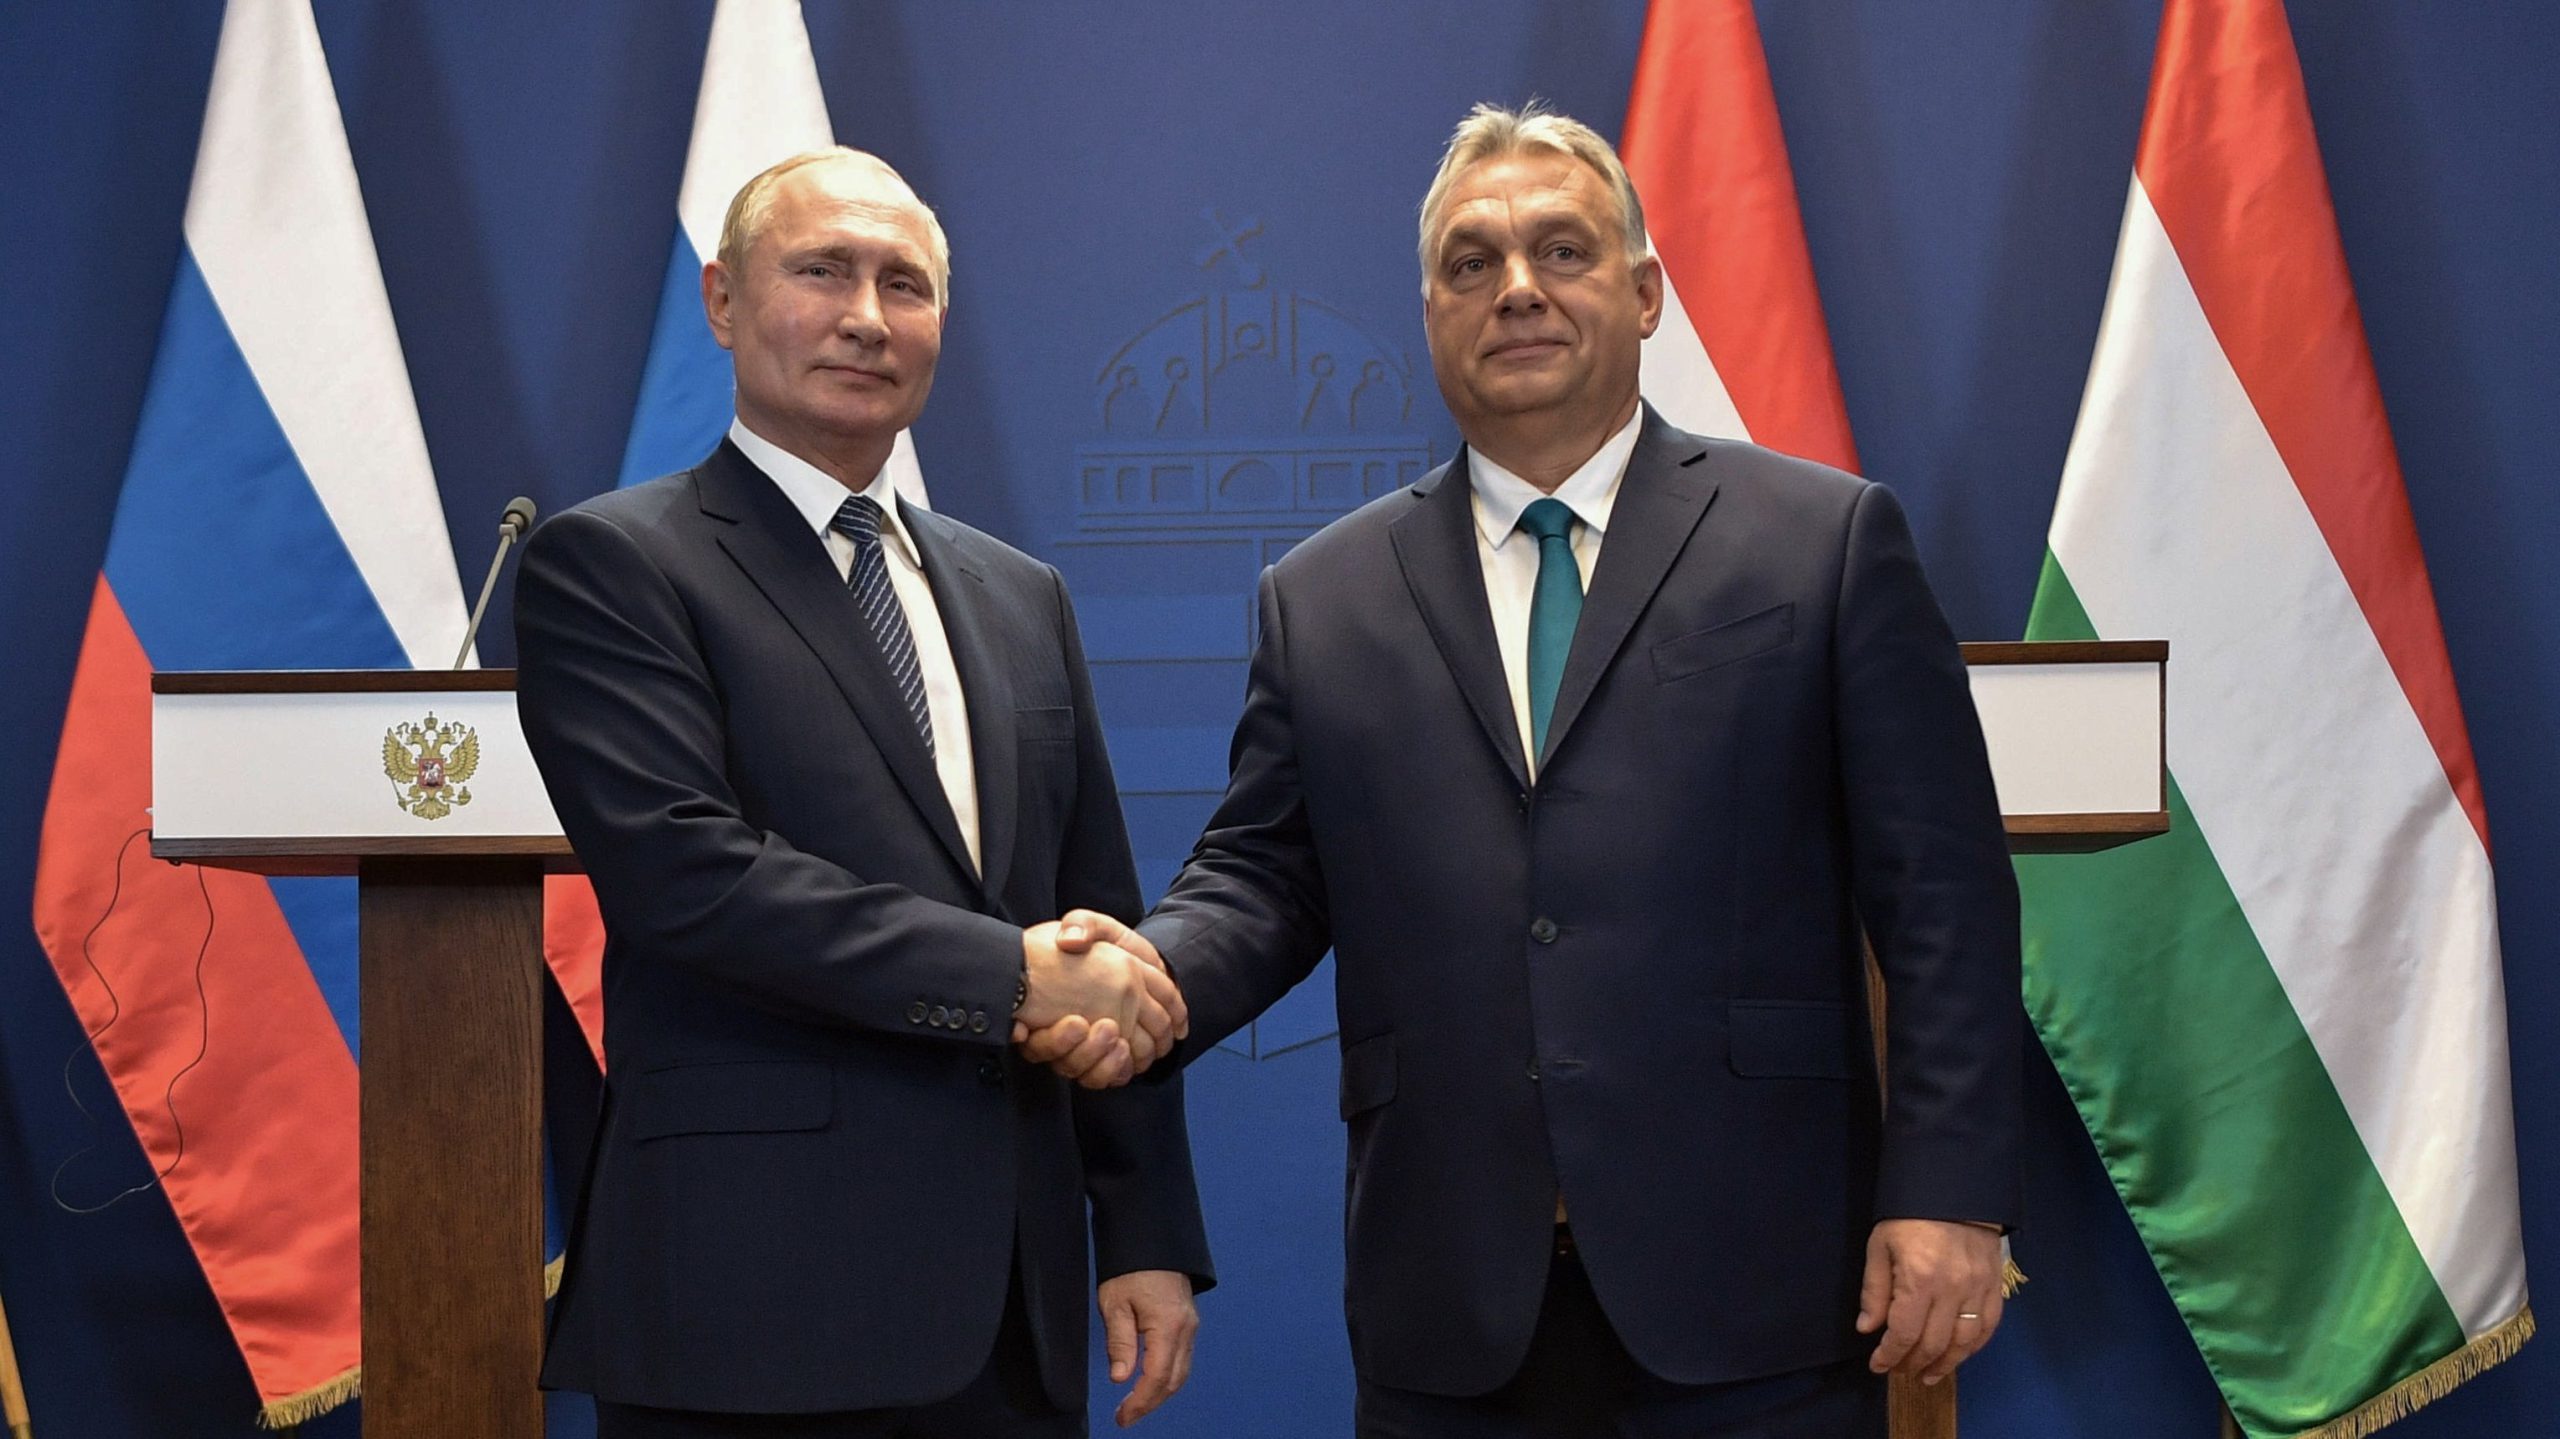  O nouă declarație scandaloasă a premierului maghiar Viktor Orban: Ungaria s-ar învecina la est cu Rusia, nu cu Ucraina